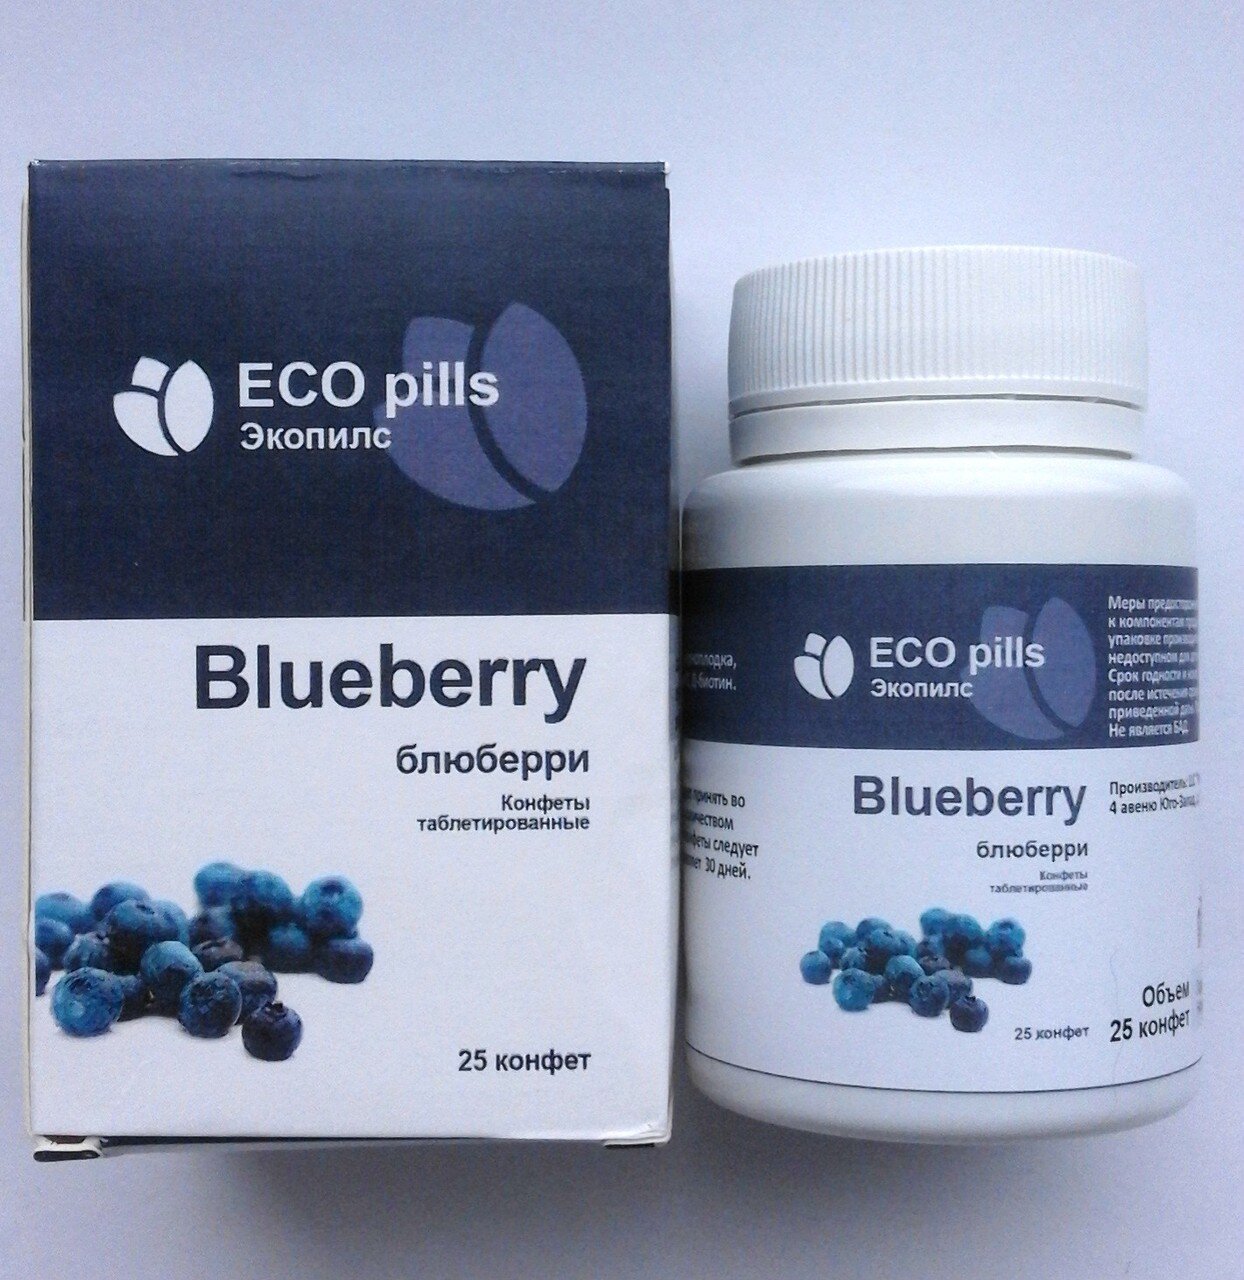 EcoPills Blueberry - Конфеты таблетированные для восстановления зрения